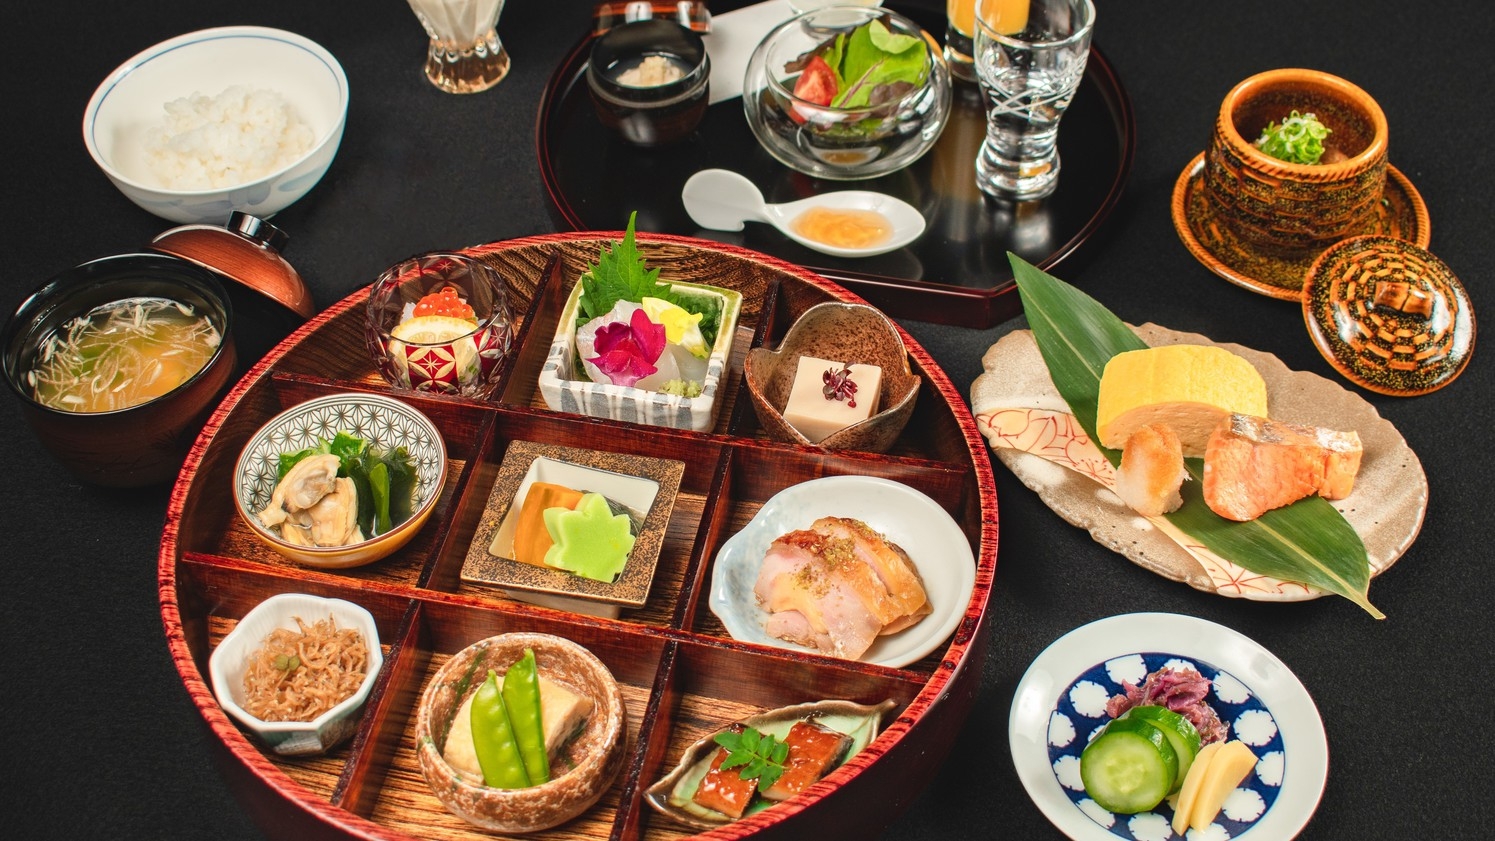 【LUXDAYSセール】〜四季折々の京料理〜京の朝ごはんを、京懐石のレストランで贅沢に【朝食付き】